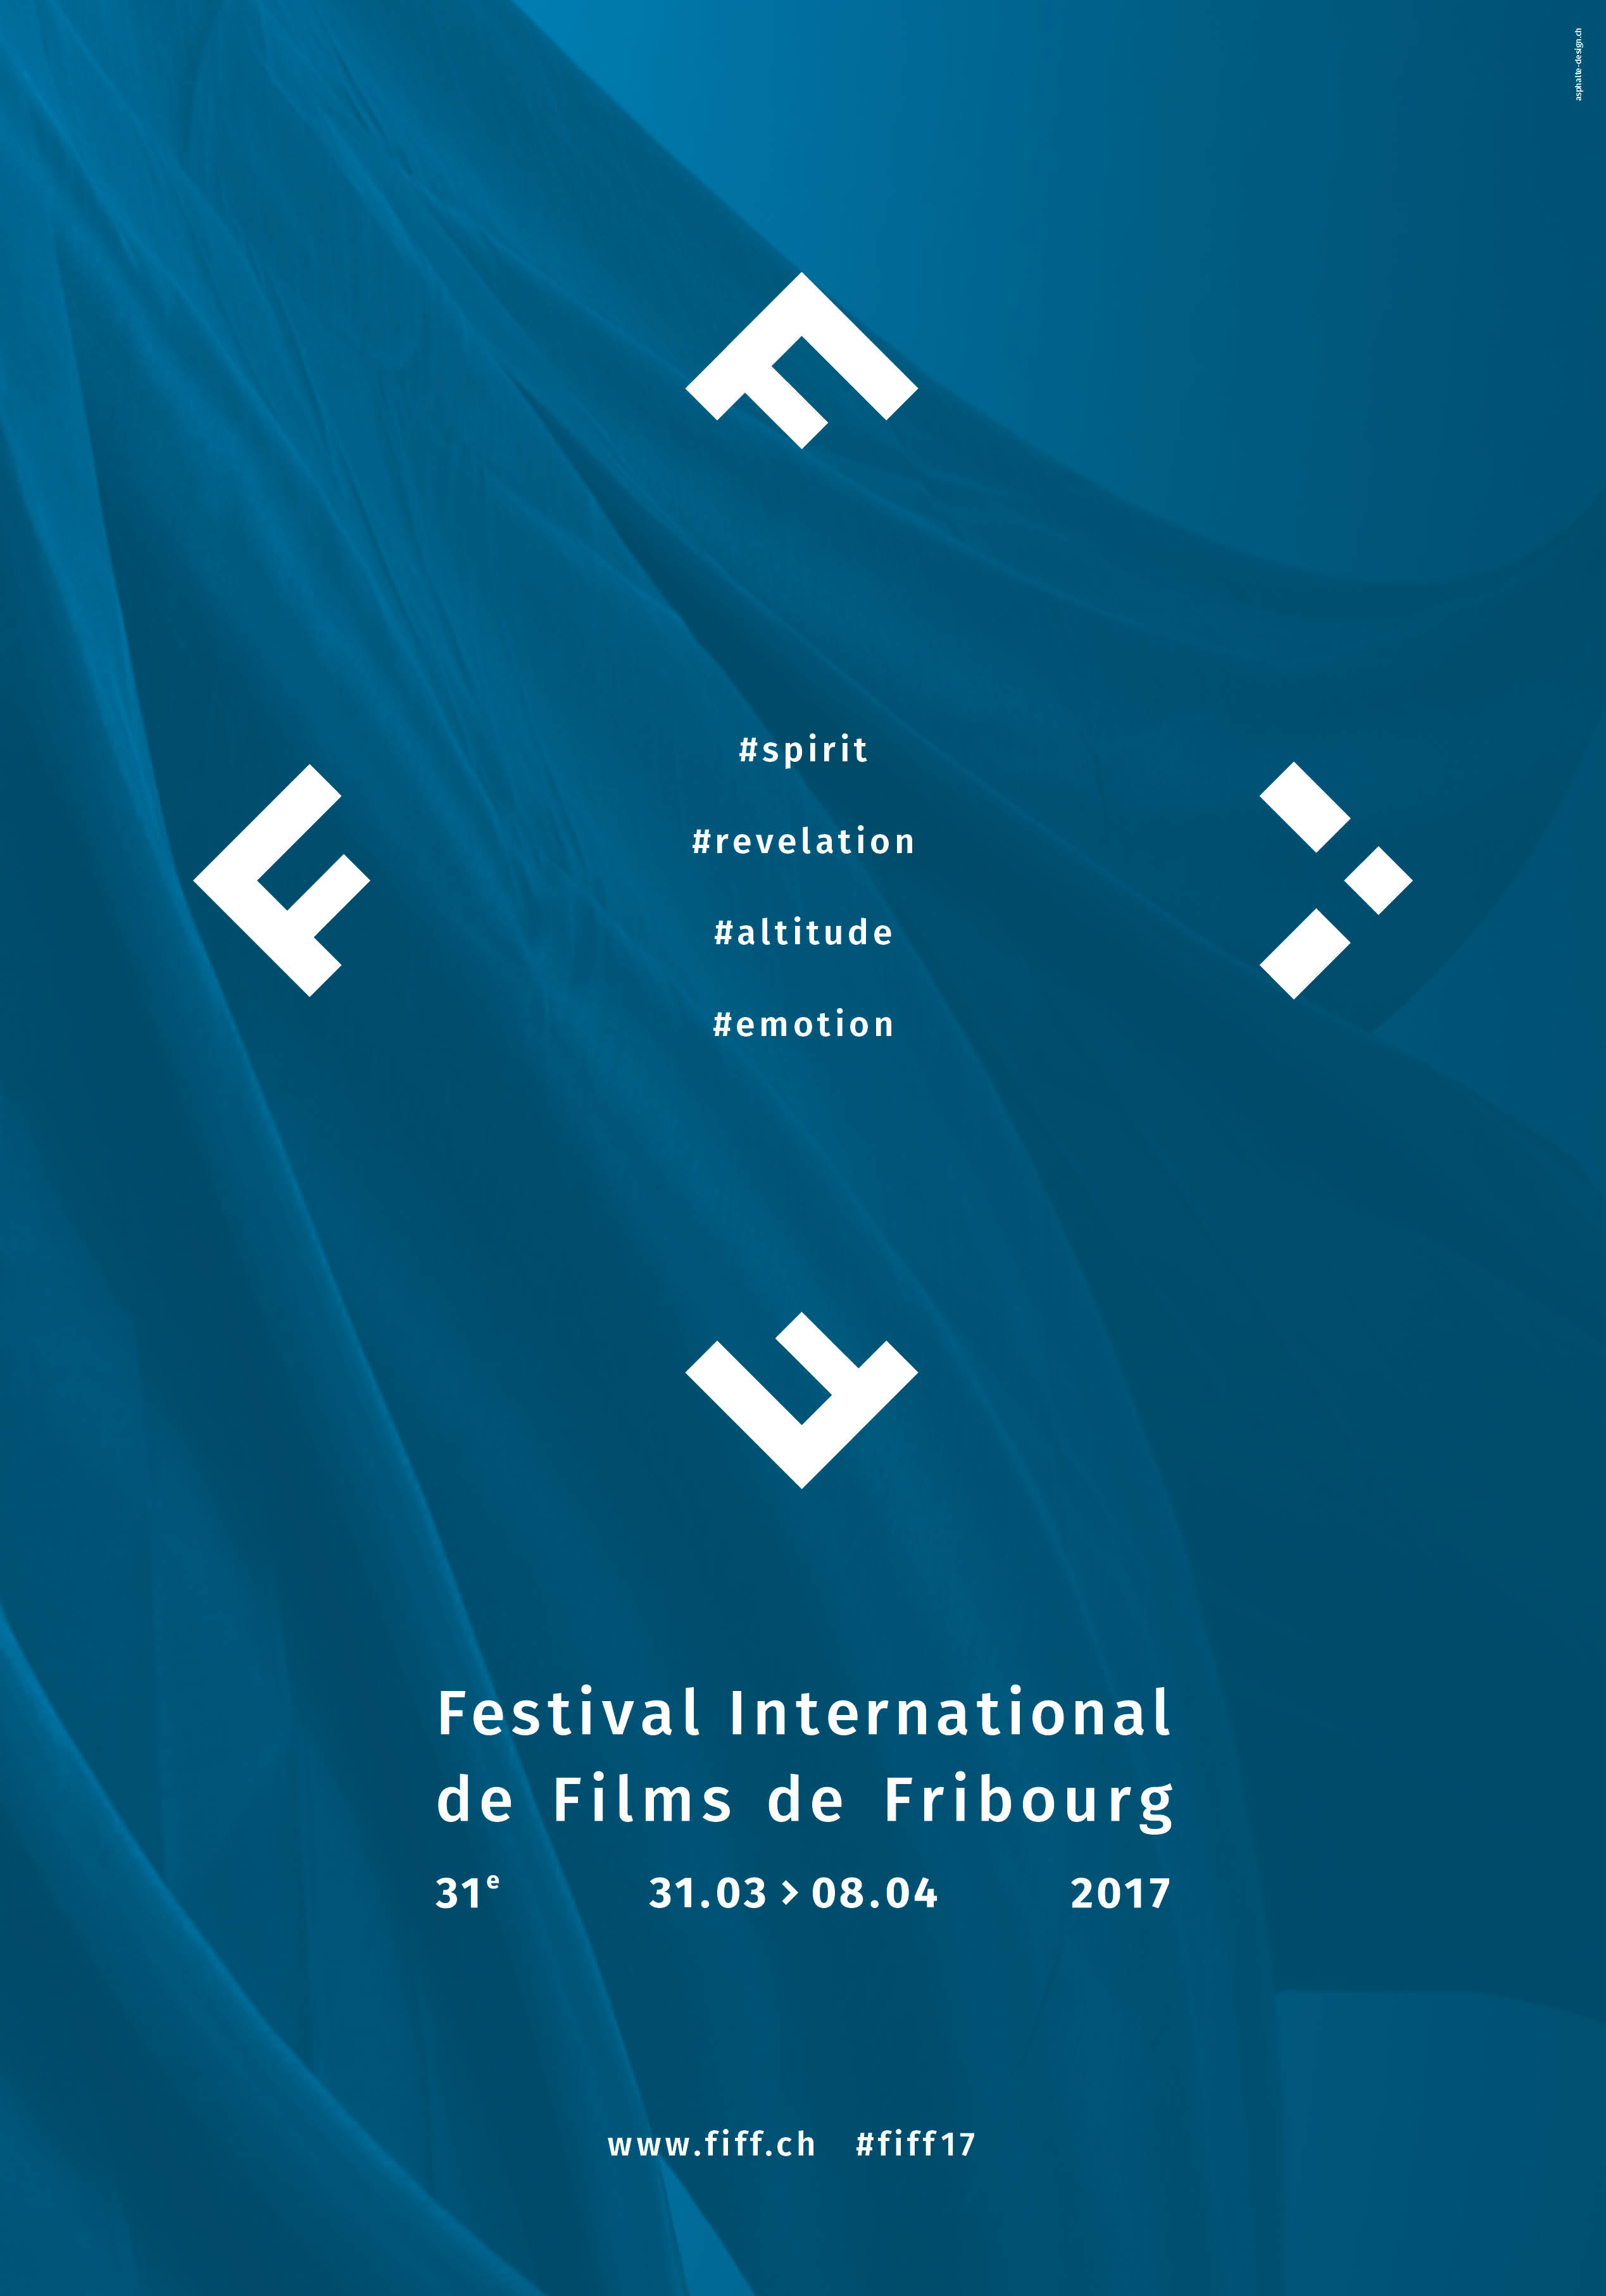 FIFF's 2017 Poster